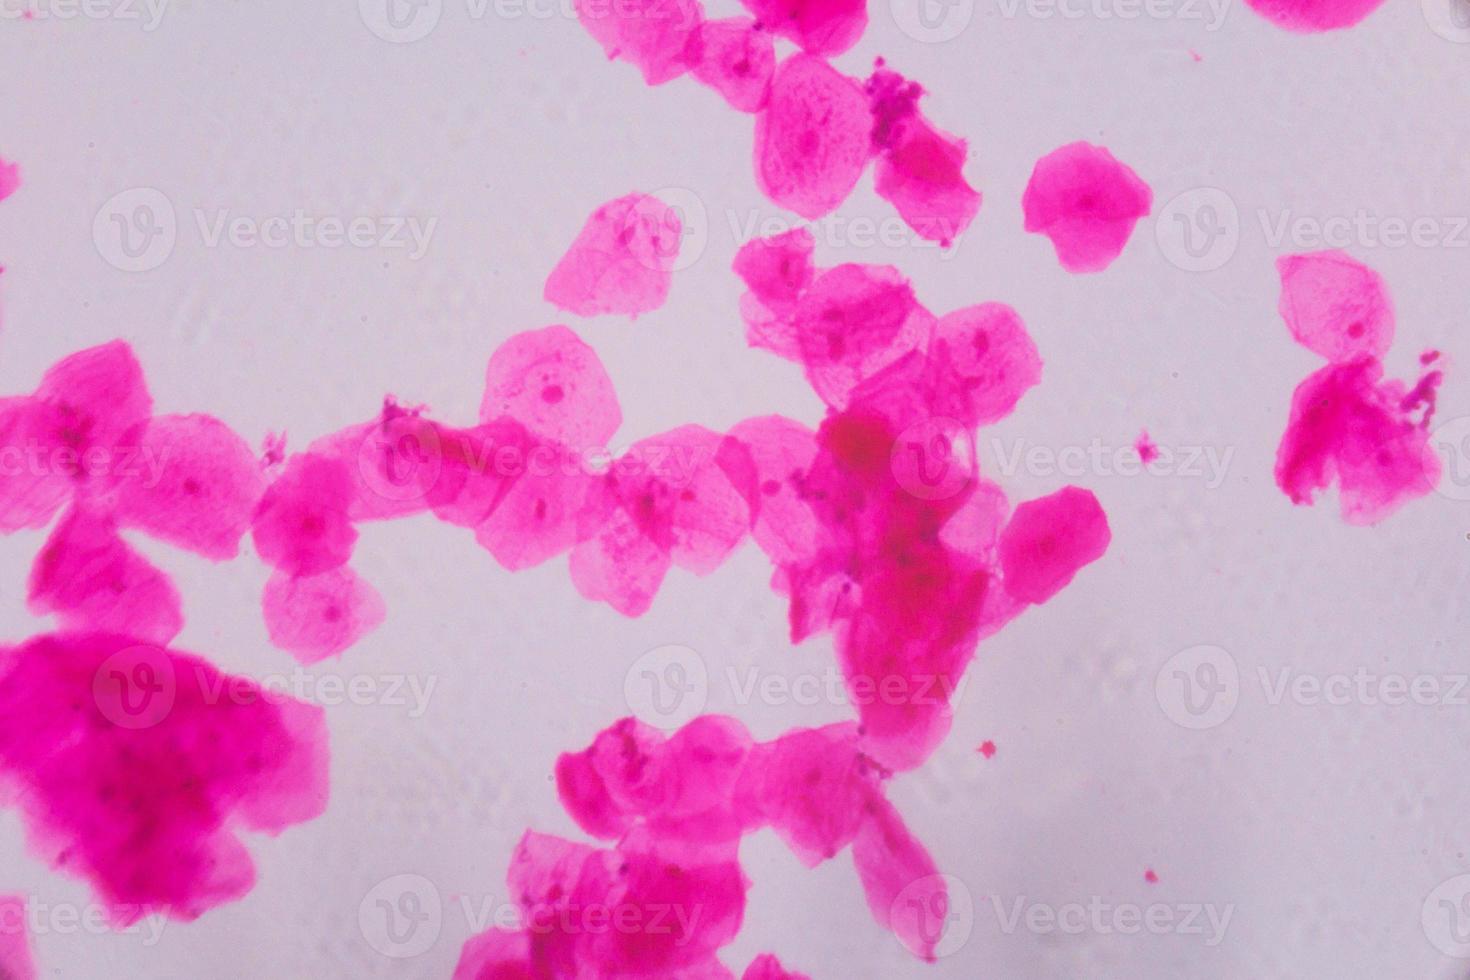 meervoudig plaveiselepitheel onder de microscoop - abstracte roze stippen op een witte achtergrond foto